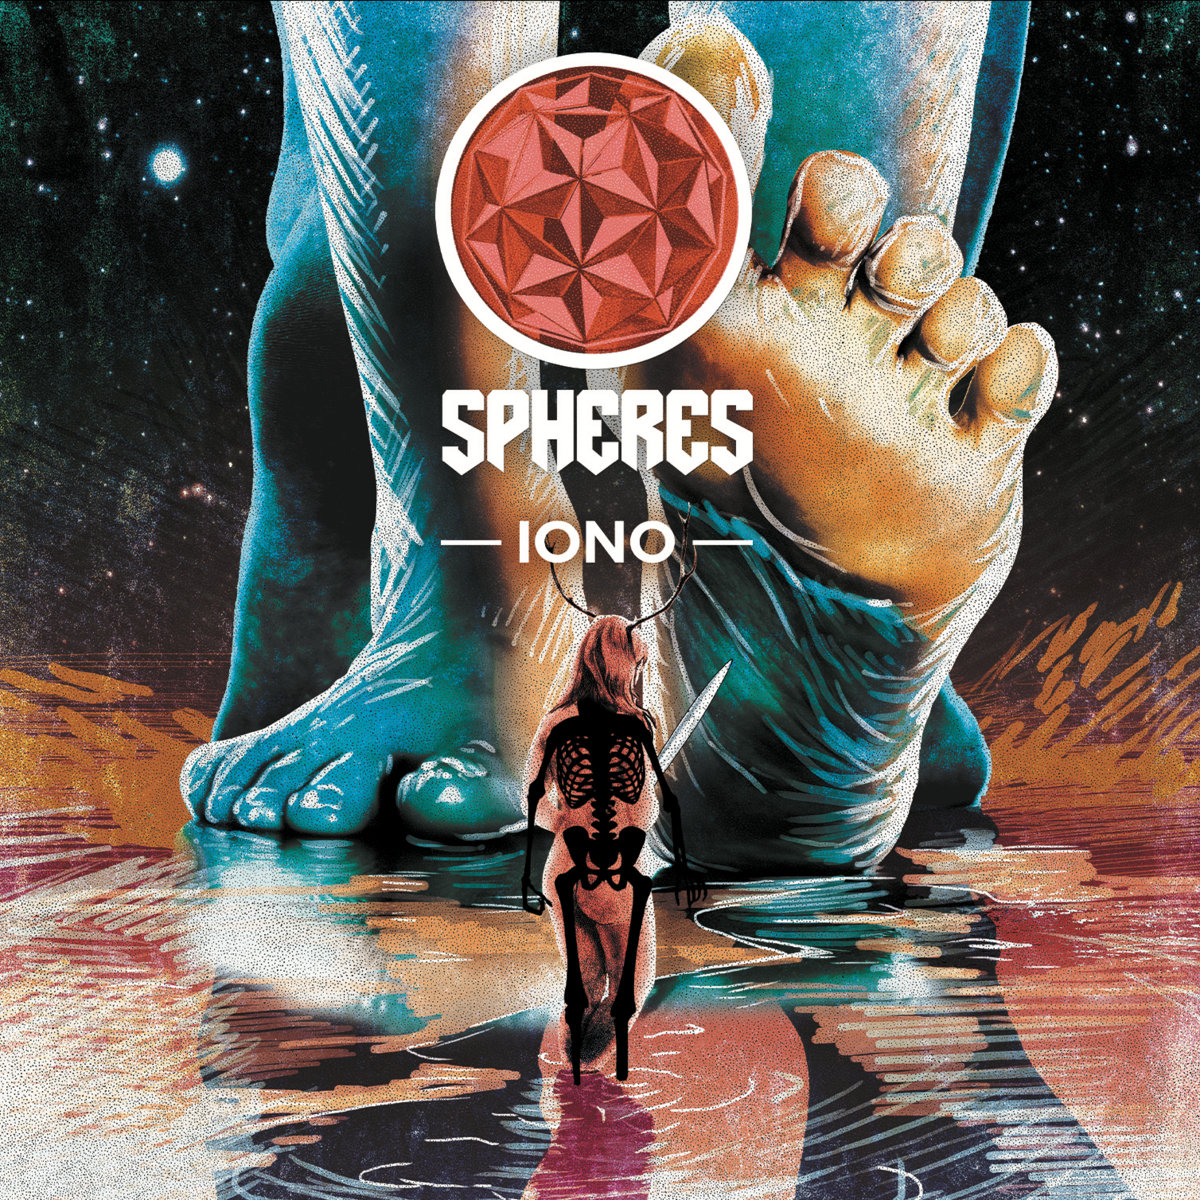 Spheres: Iono